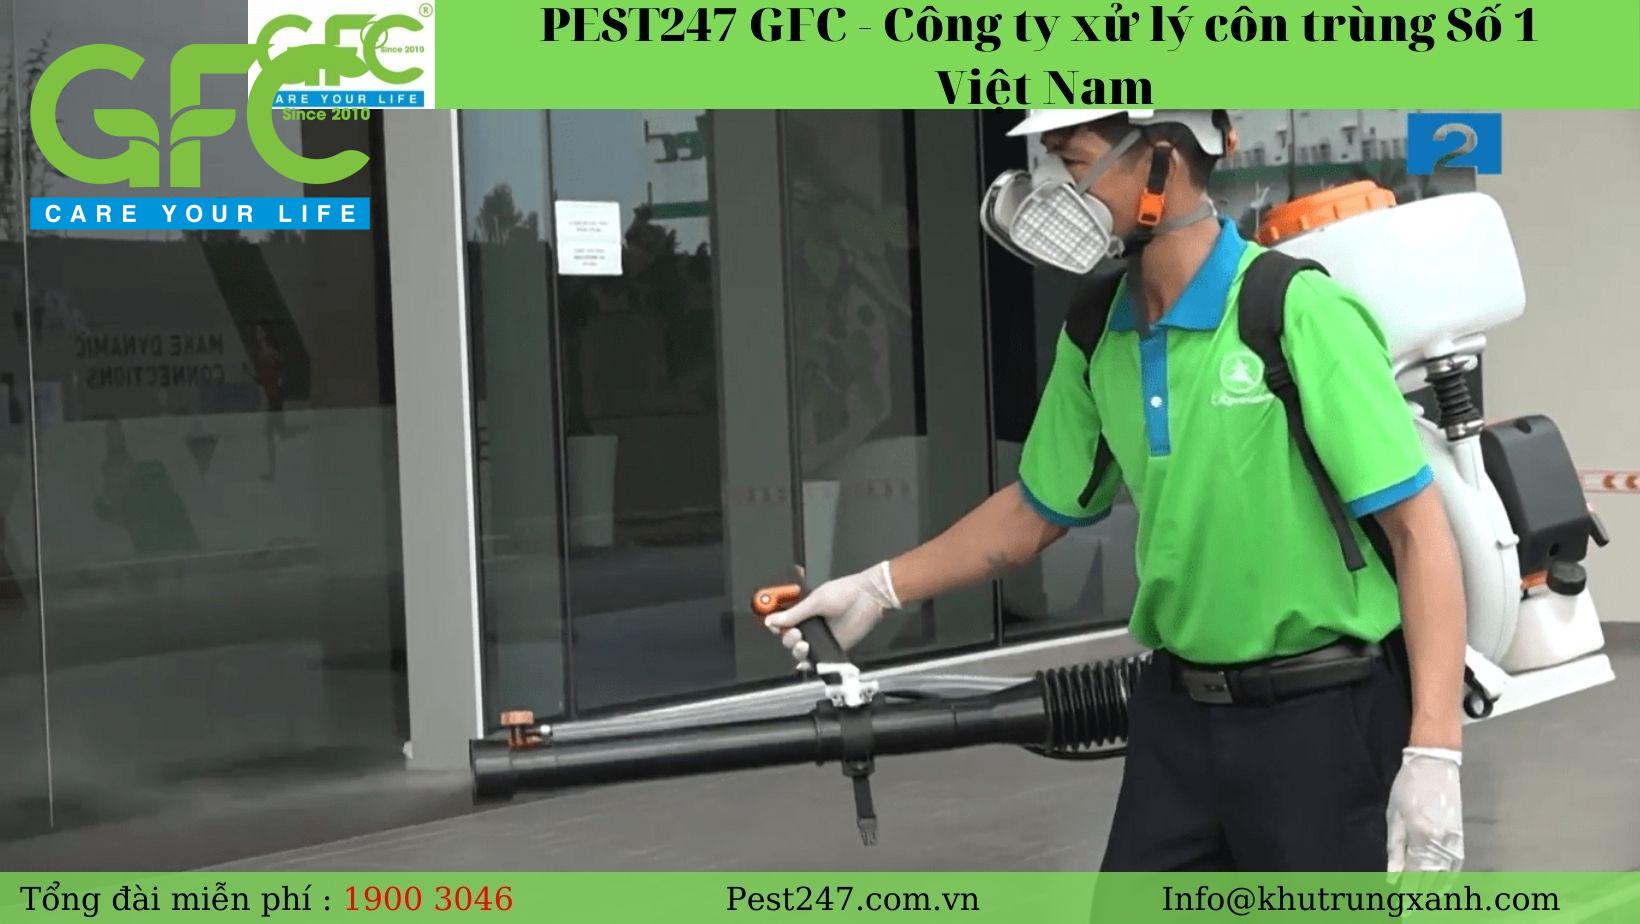 PEST247 GFC cung cấp xử lý côn trùng chất lượng 